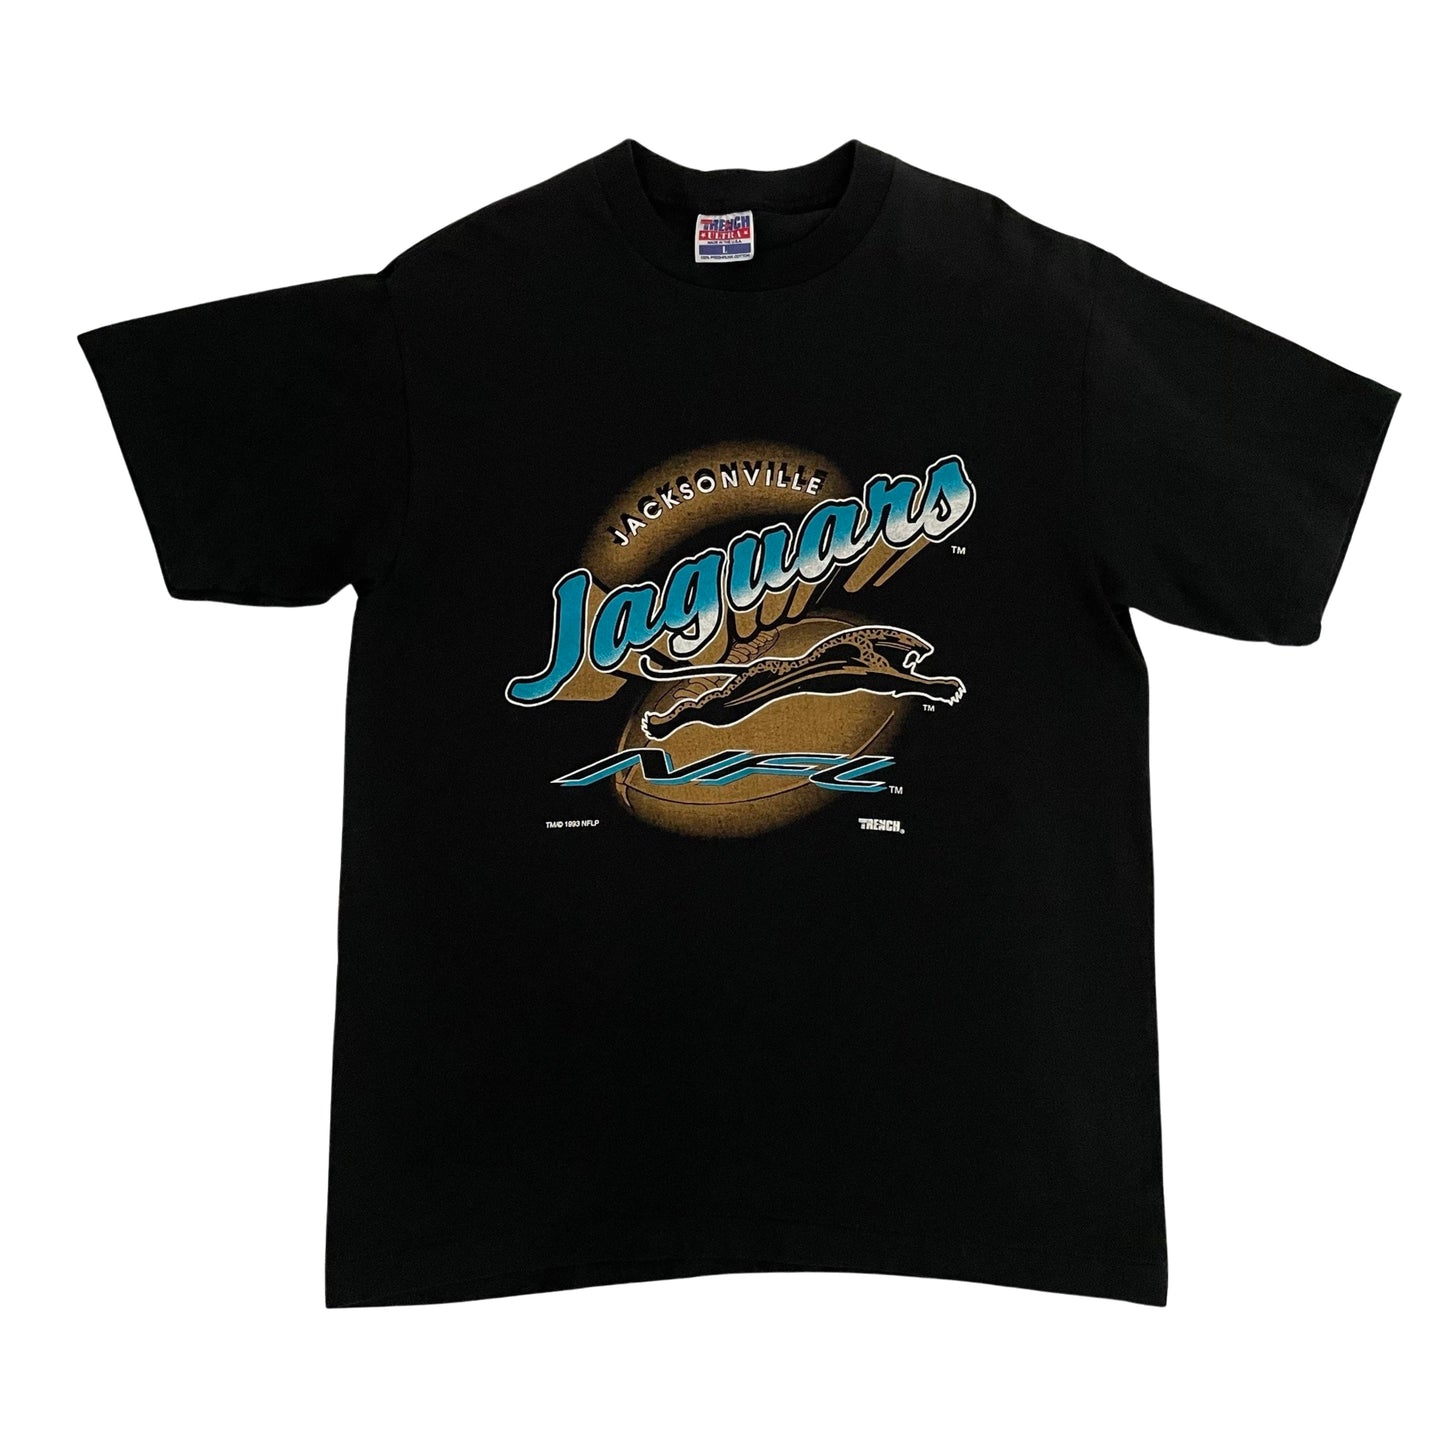 Vintage Jacksonville Jaguars 1993 banned logo shirt size LARGE